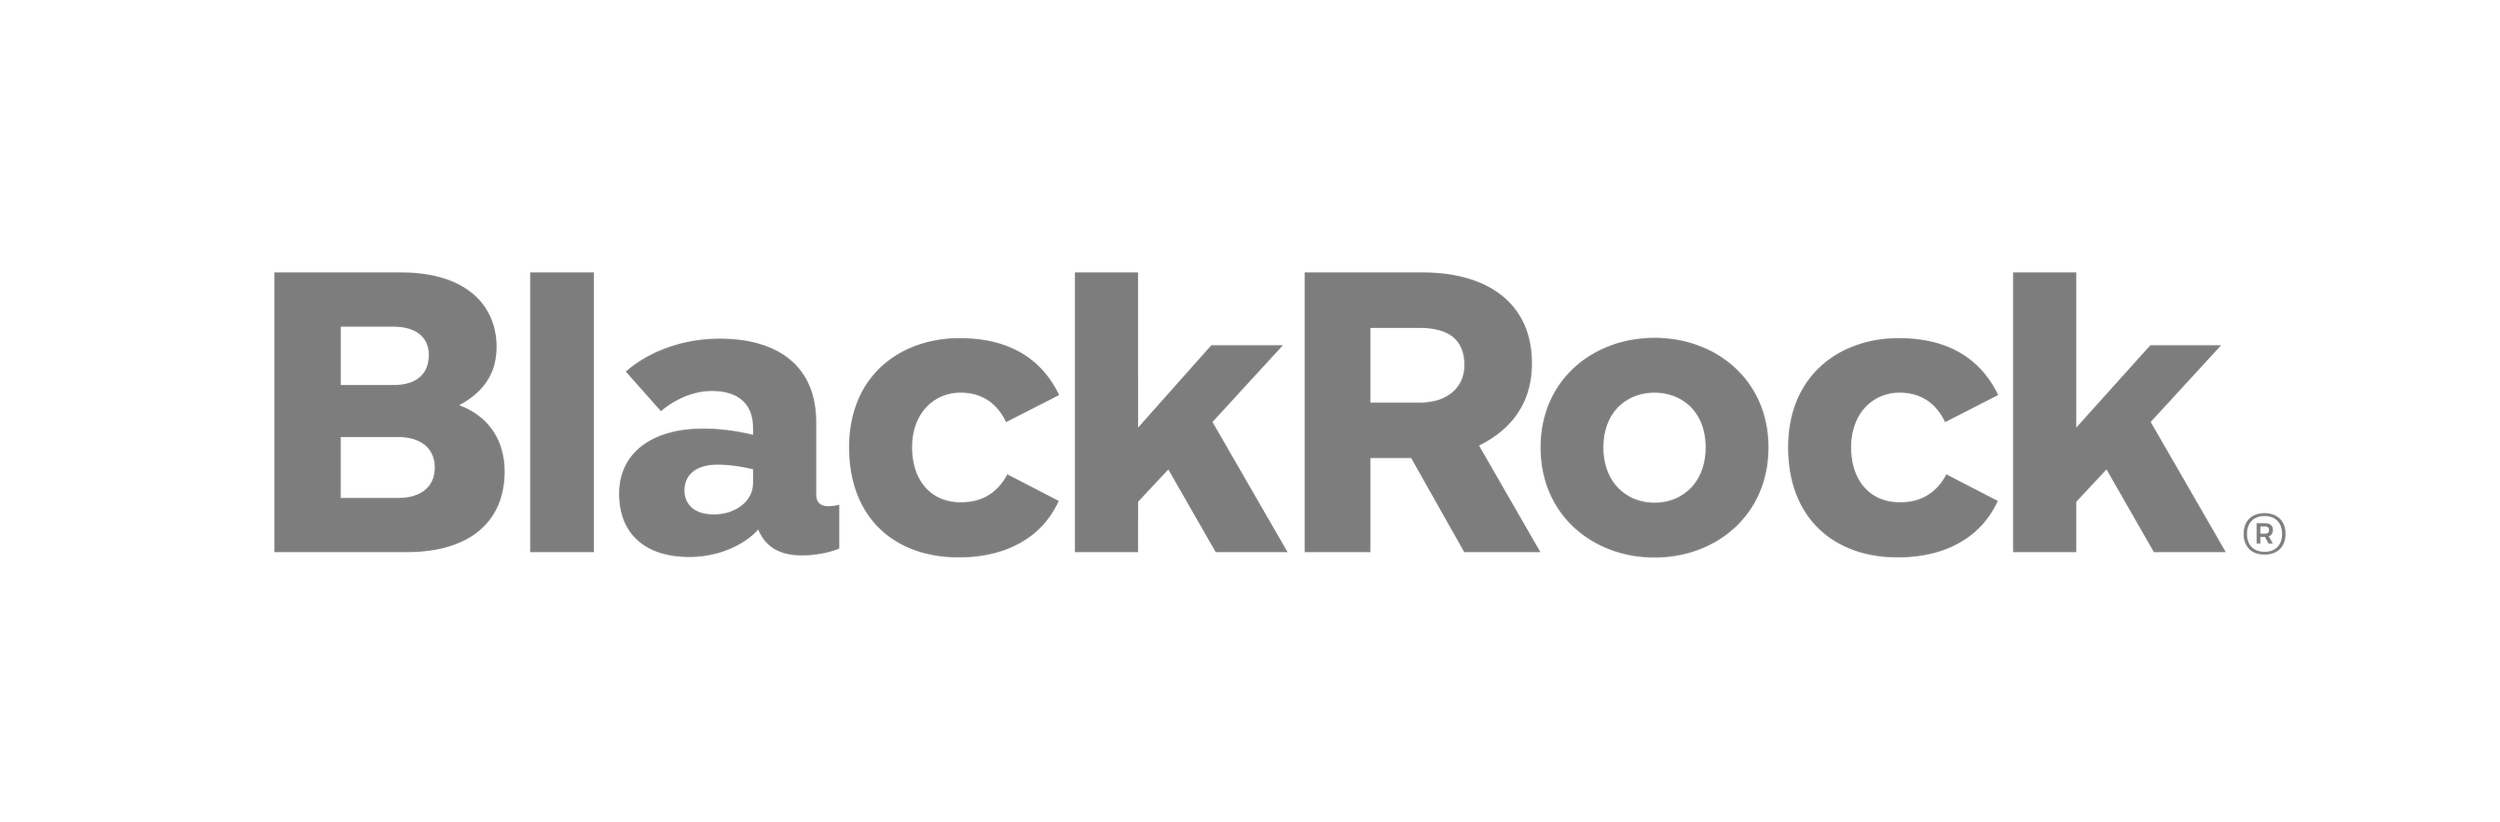 BlackRock_Wordmark_Blk_300dpi.png